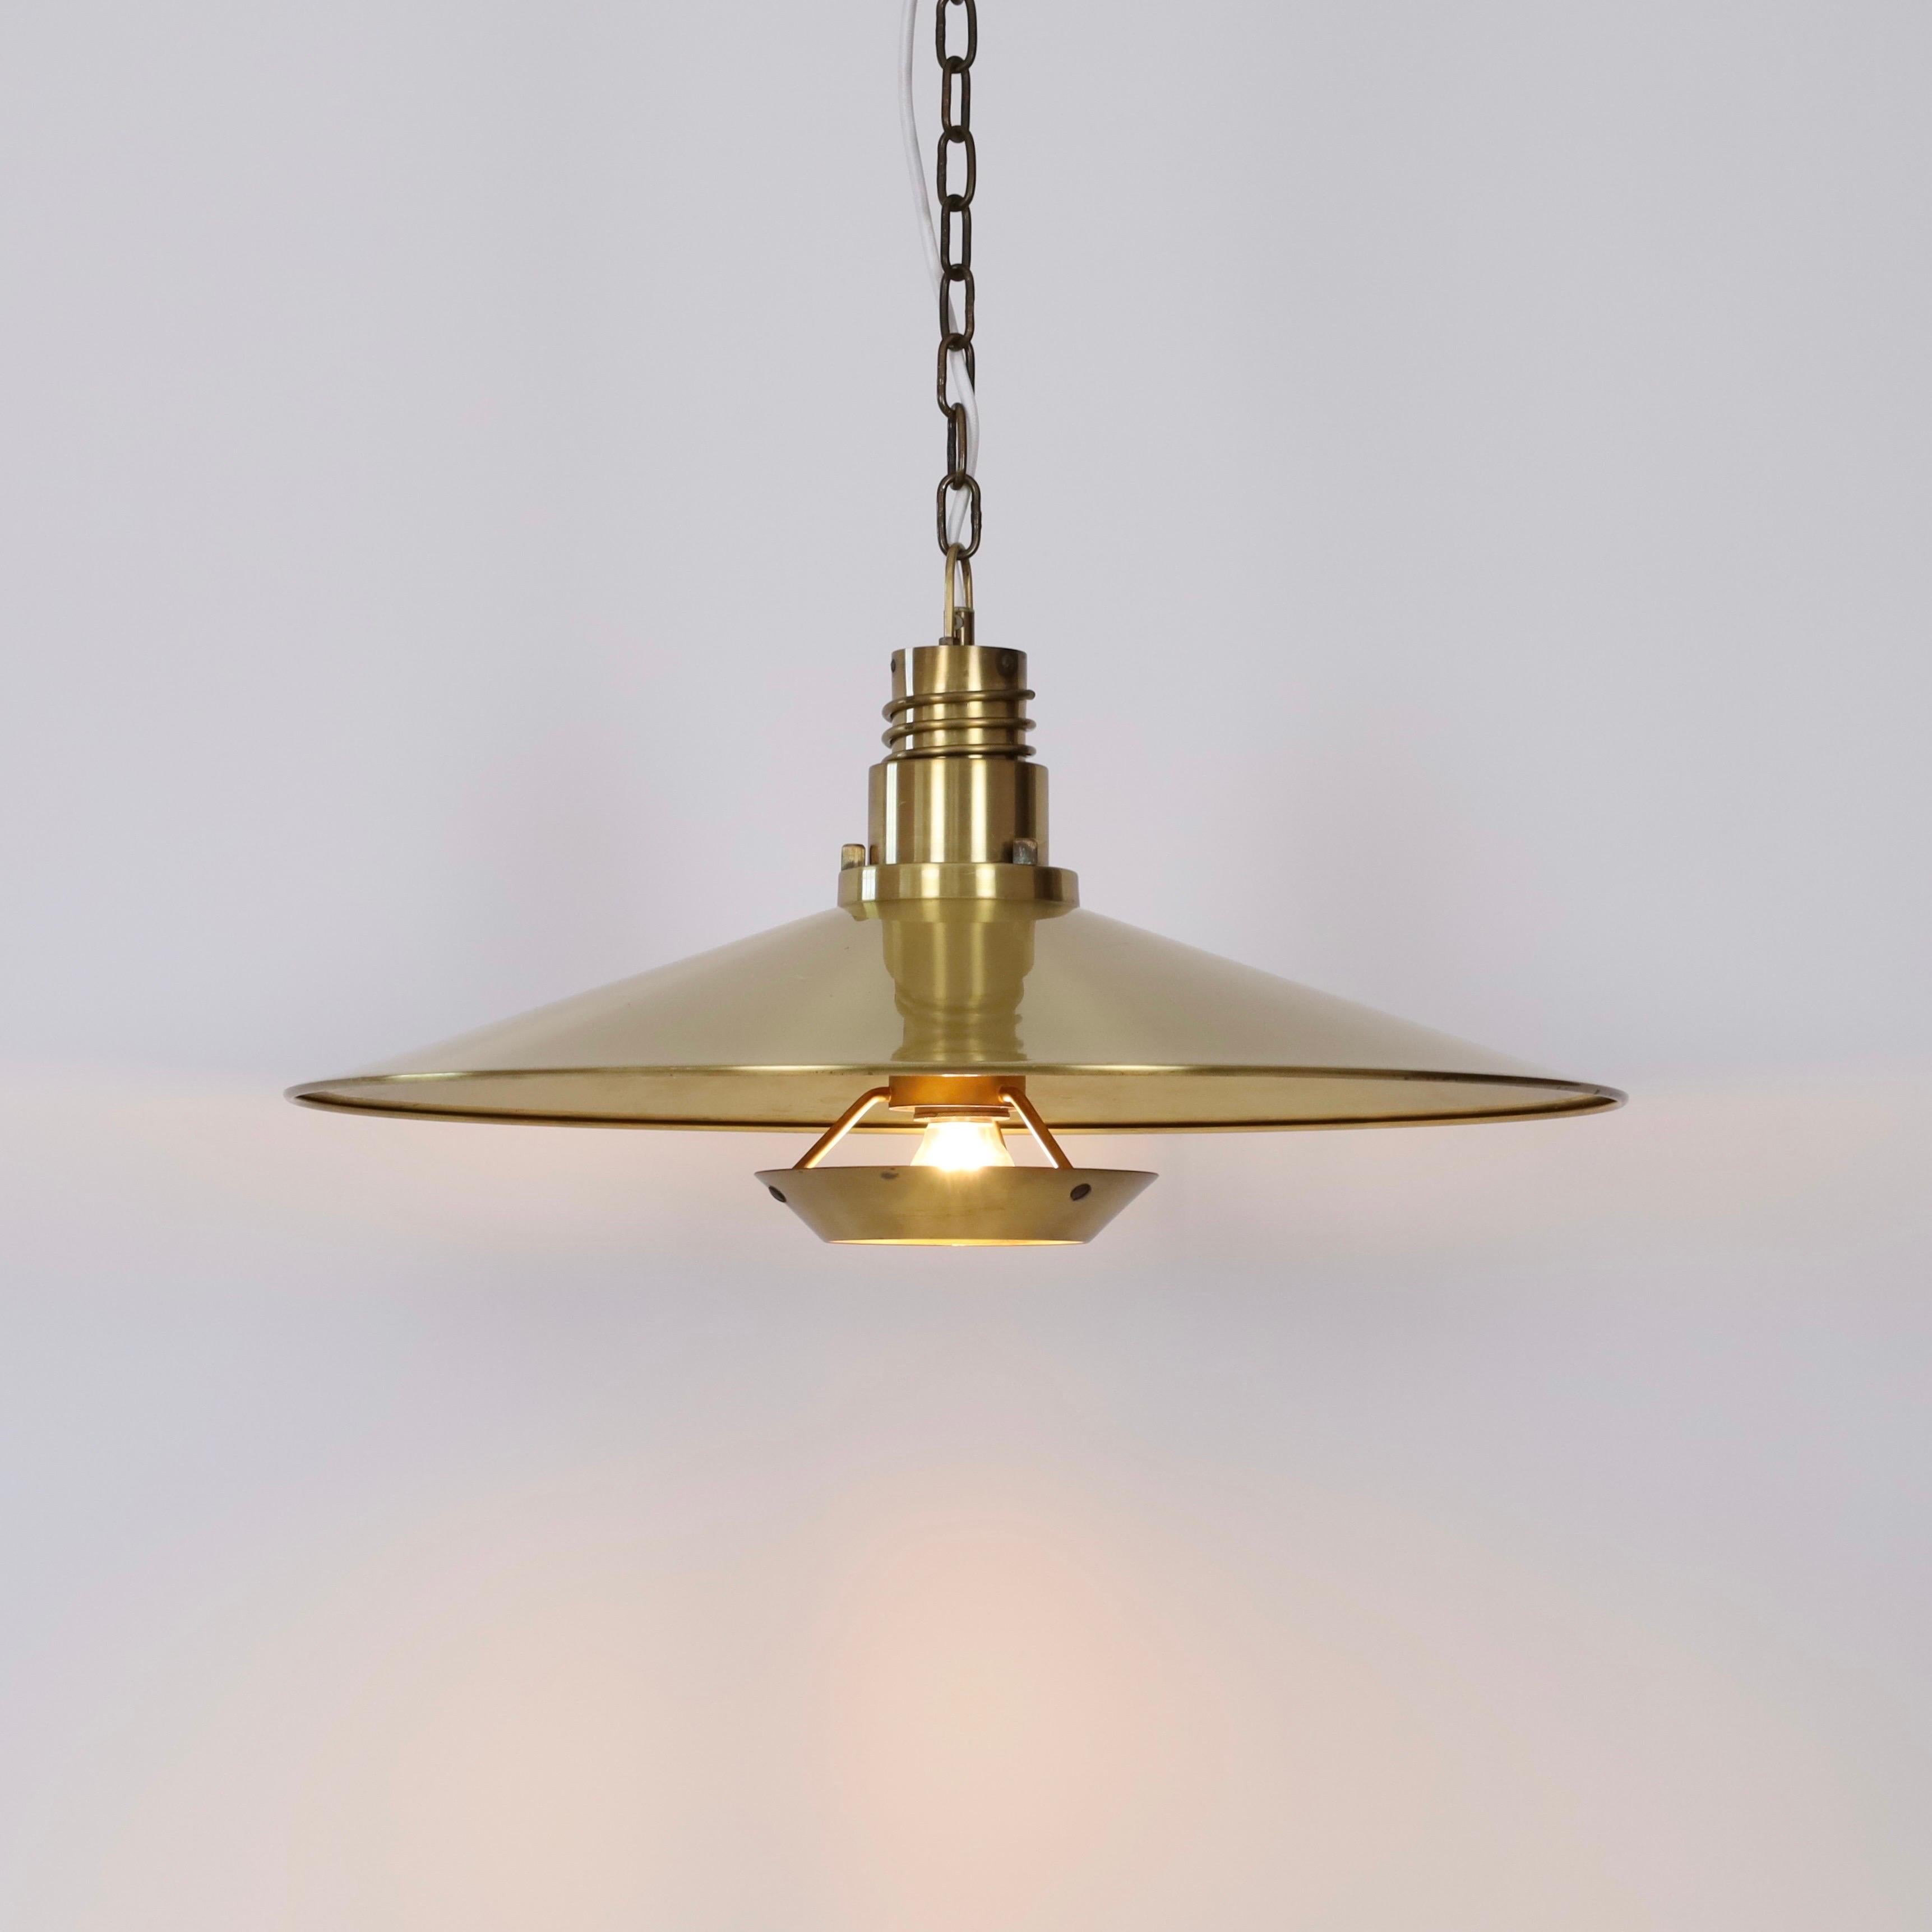 Substantial Danish Modern Brass Pendant Light by Fog & Morup, 1960s, Denmark In Good Condition For Sale In Værløse, DK